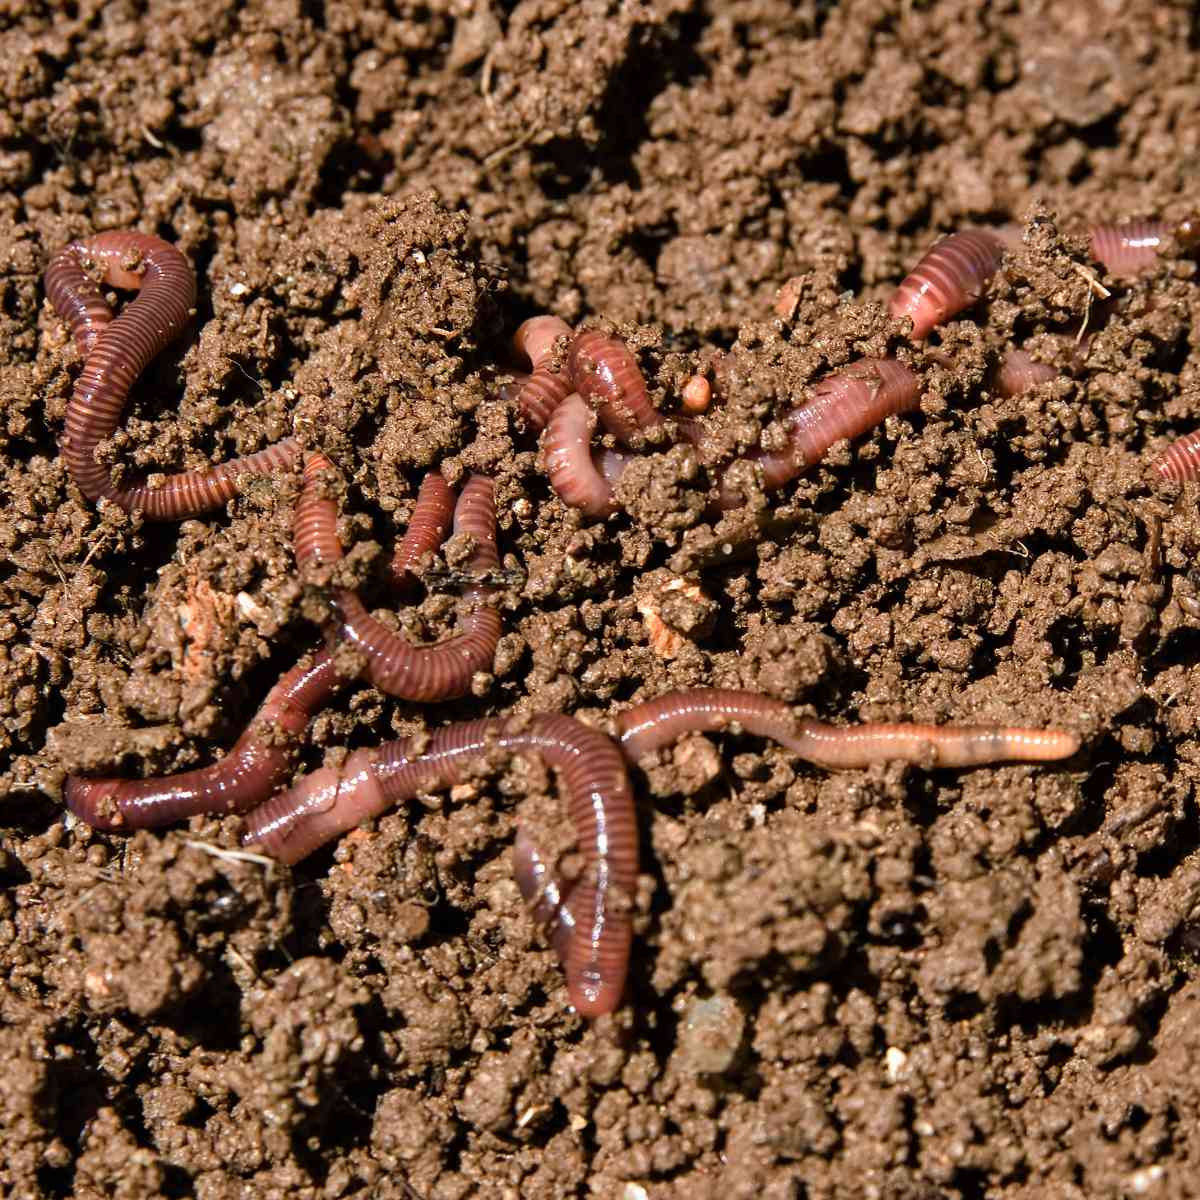 10 Fun Facts About Earthworms - Factopolis